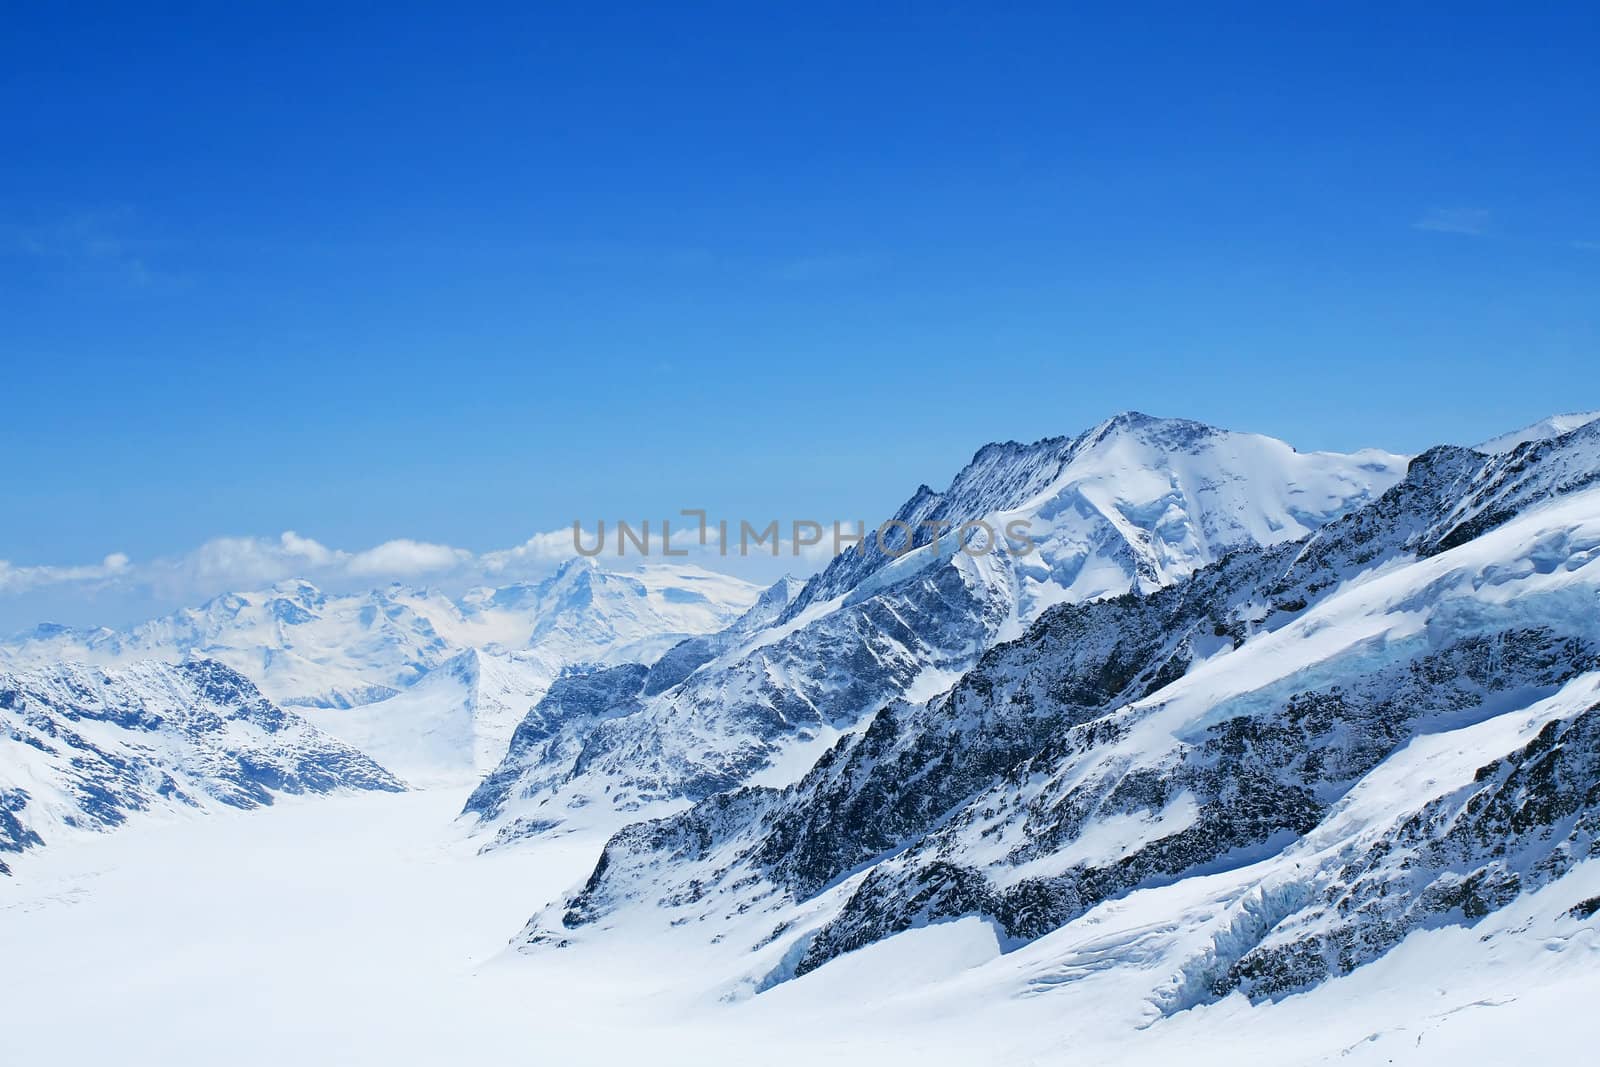 Winter landscape in the swiss alps